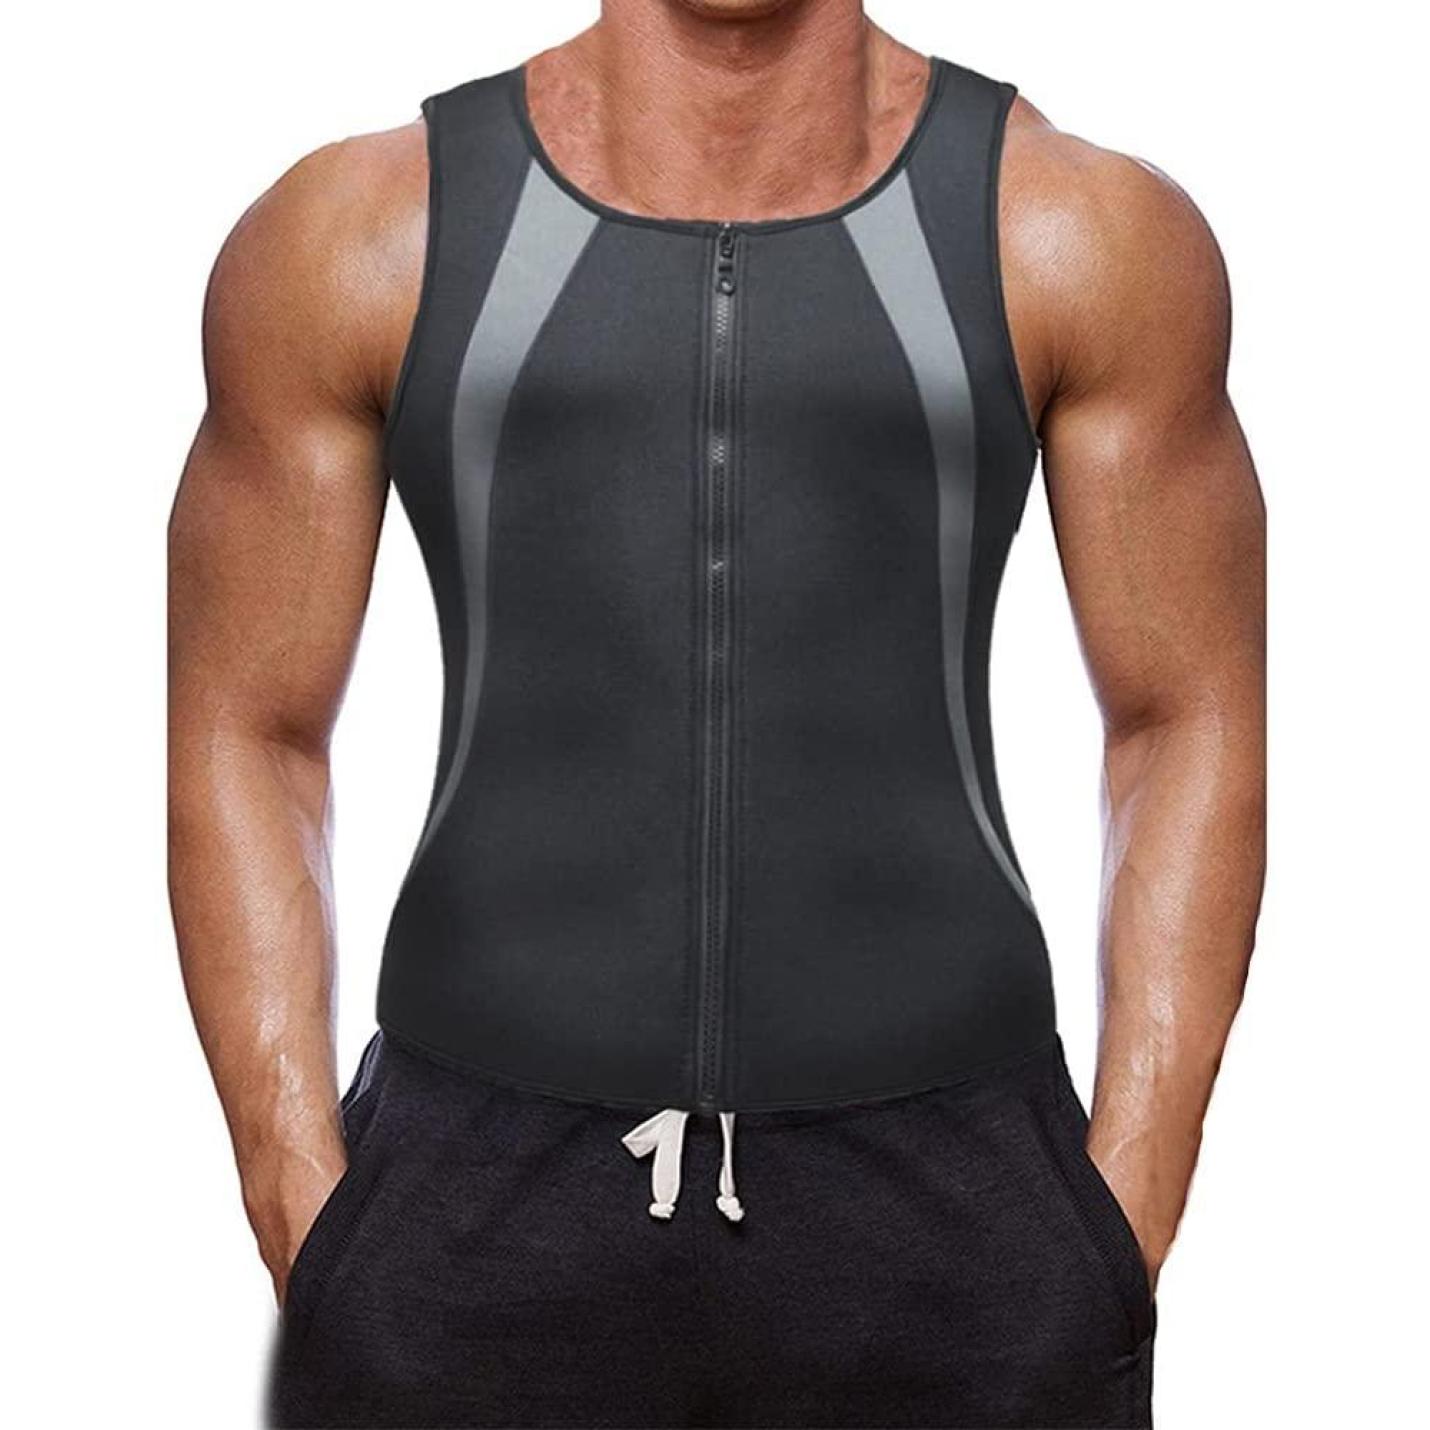 kiespijn Discreet ethiek Body-Shaper, gewichtsverlies, sauna-zweet-body shaper voor heren, fitness,  zwart Gray L Happygetfit | Webshoplocatie.nl